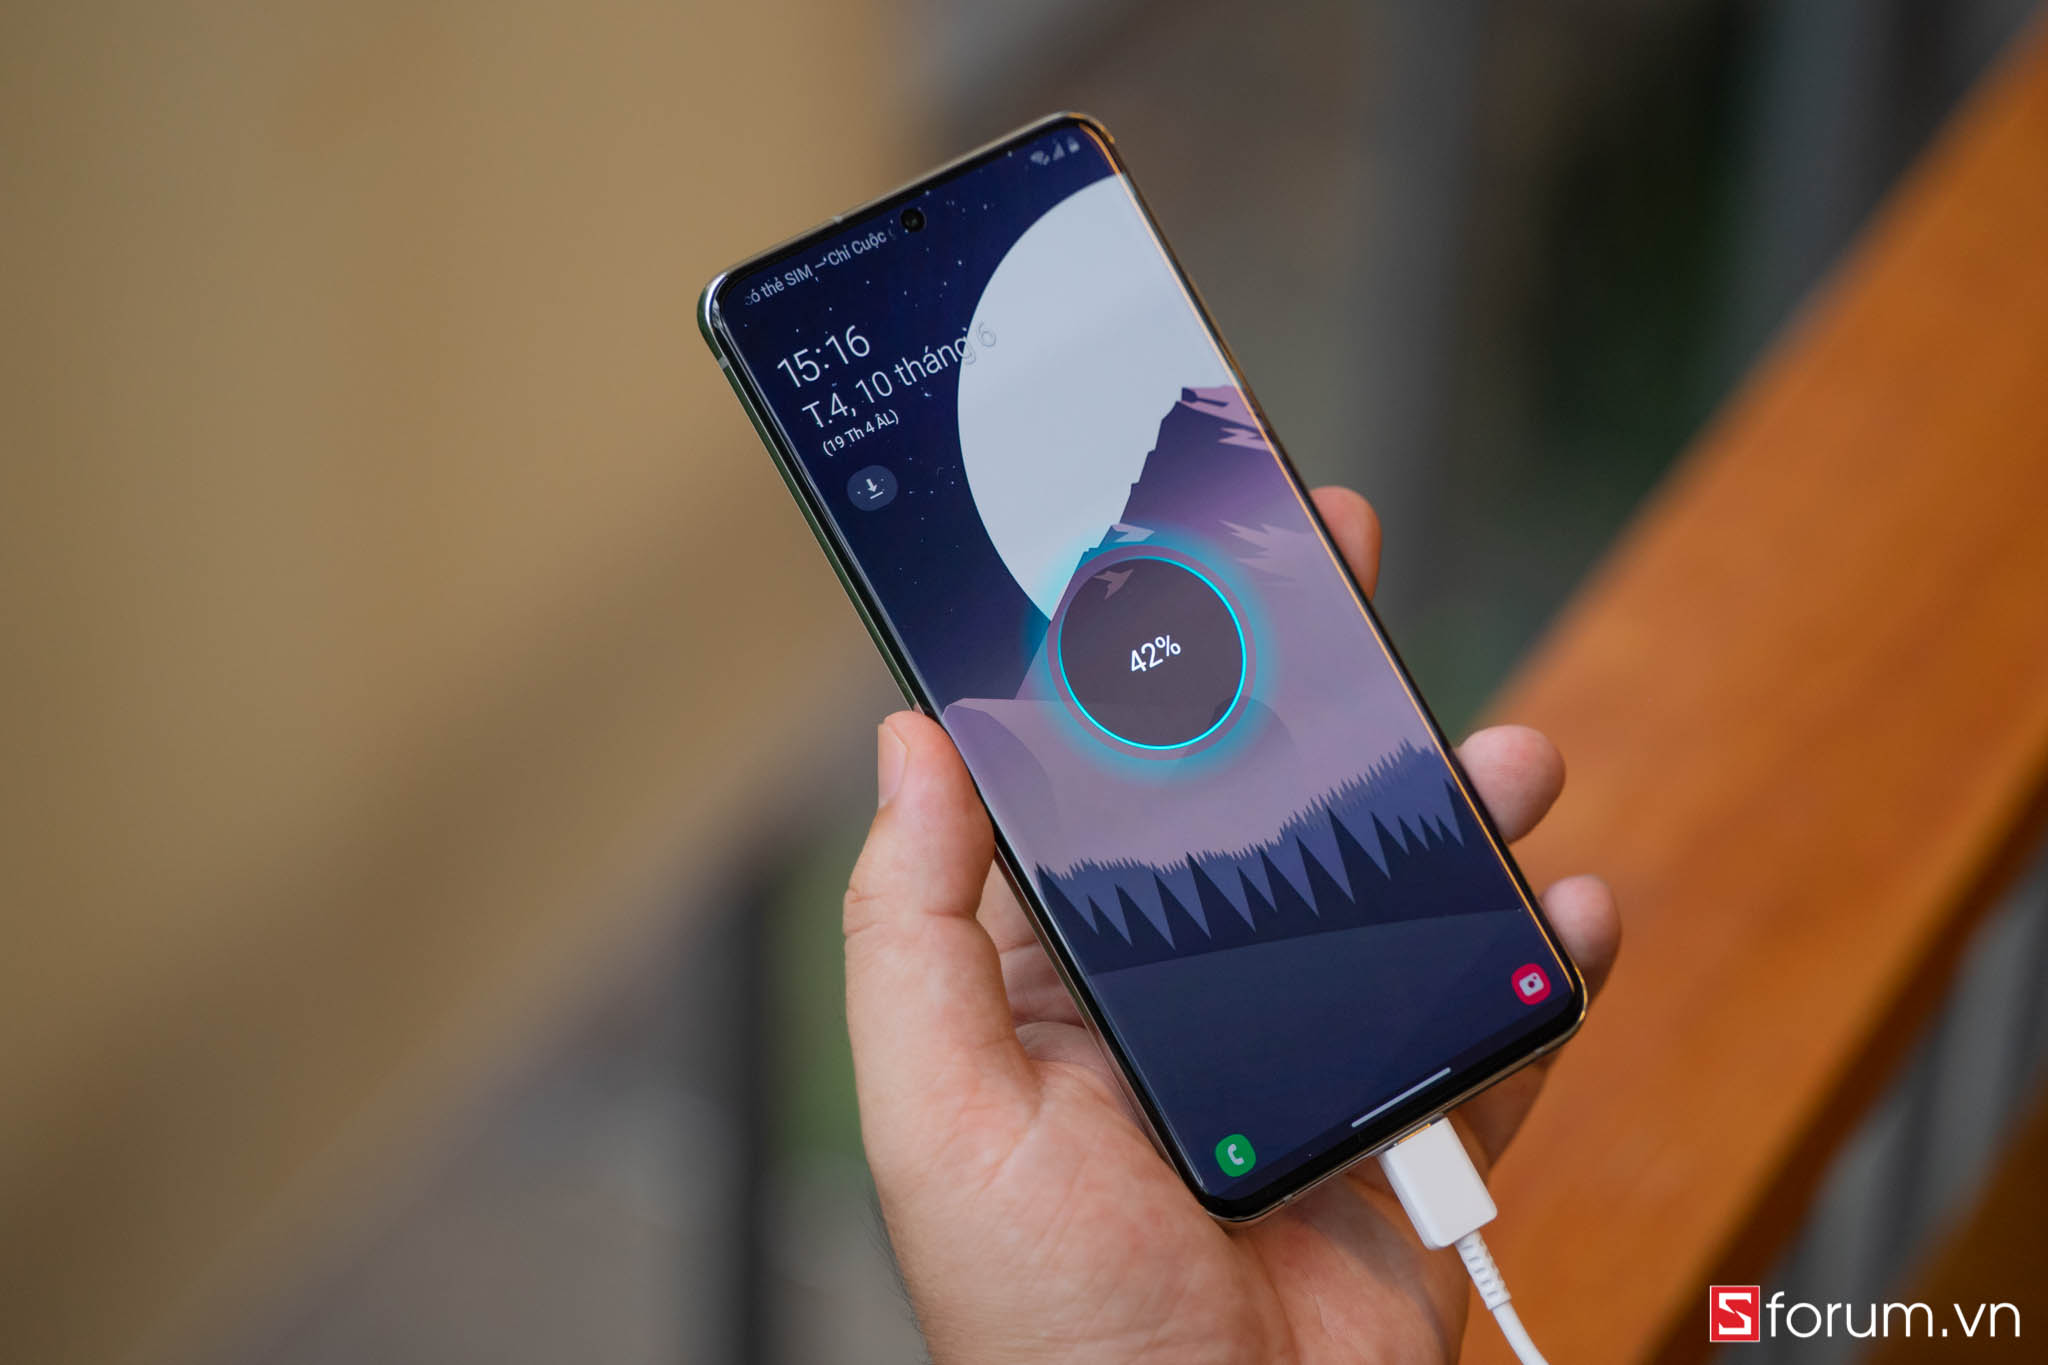 Sforum - Trang thông tin công nghệ mới nhất Galaxy-S20-Ultra-white-15 Bằng những nâng cấp về hiệu năng và 5G, Samsung sẽ lại thống trị thị trường với Galaxy S 2021? 